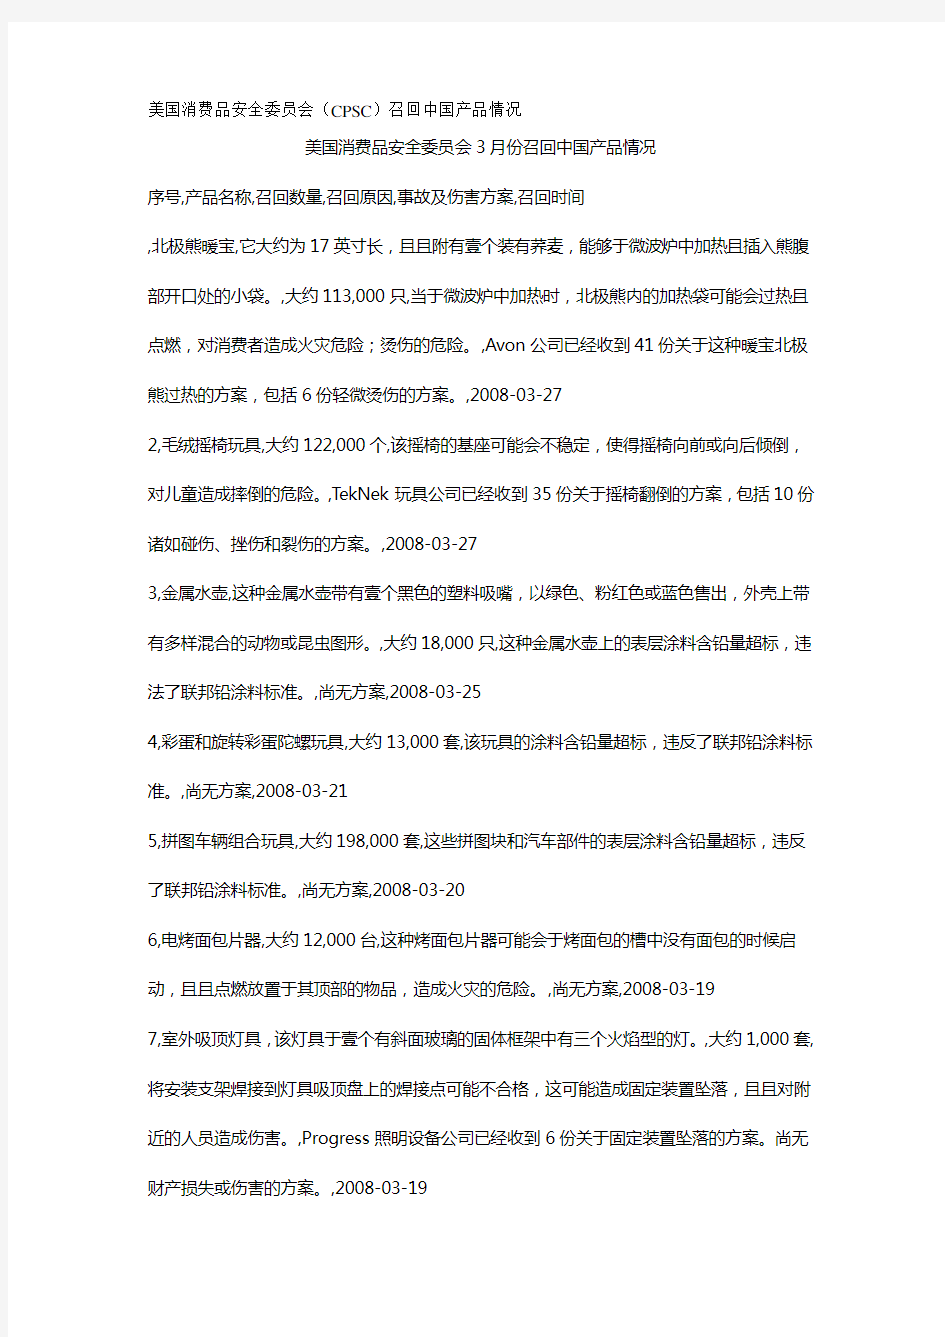 (产品管理)美国消费品安全委员会(CPSC)召回中国产品情况